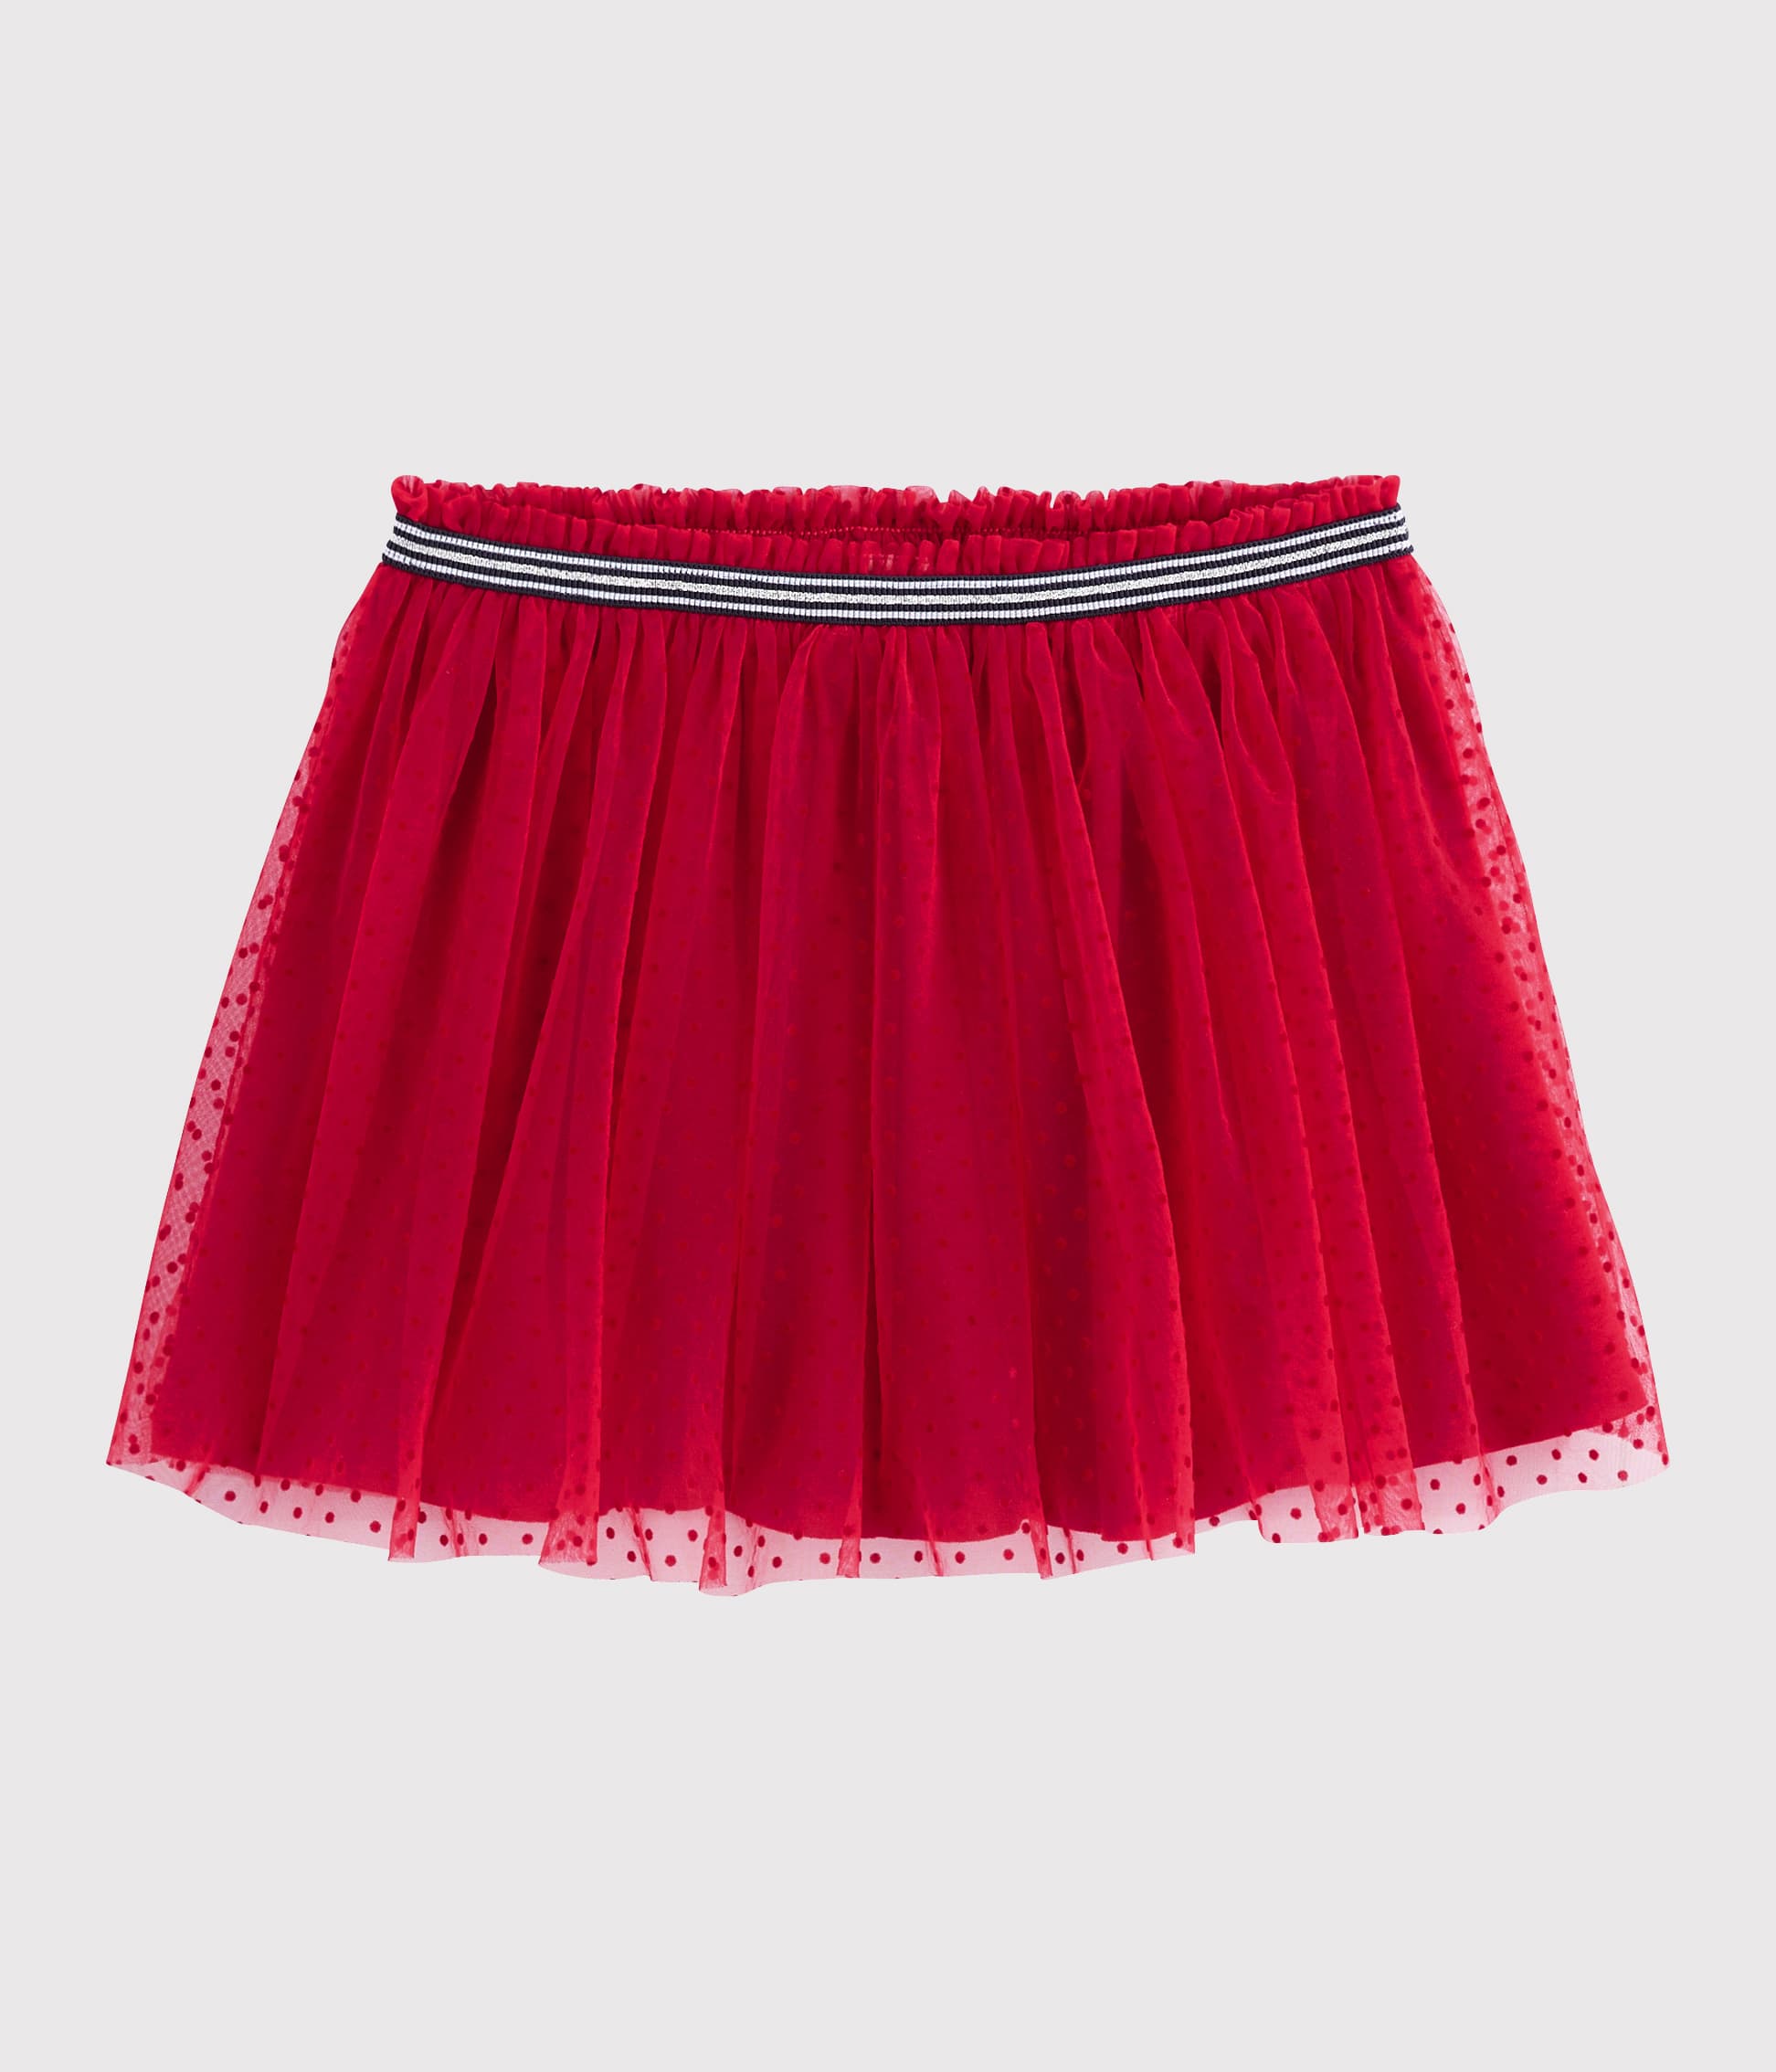 Jupe en tulle rouge pour fille, jupe duveteuse pour petite fille -   France